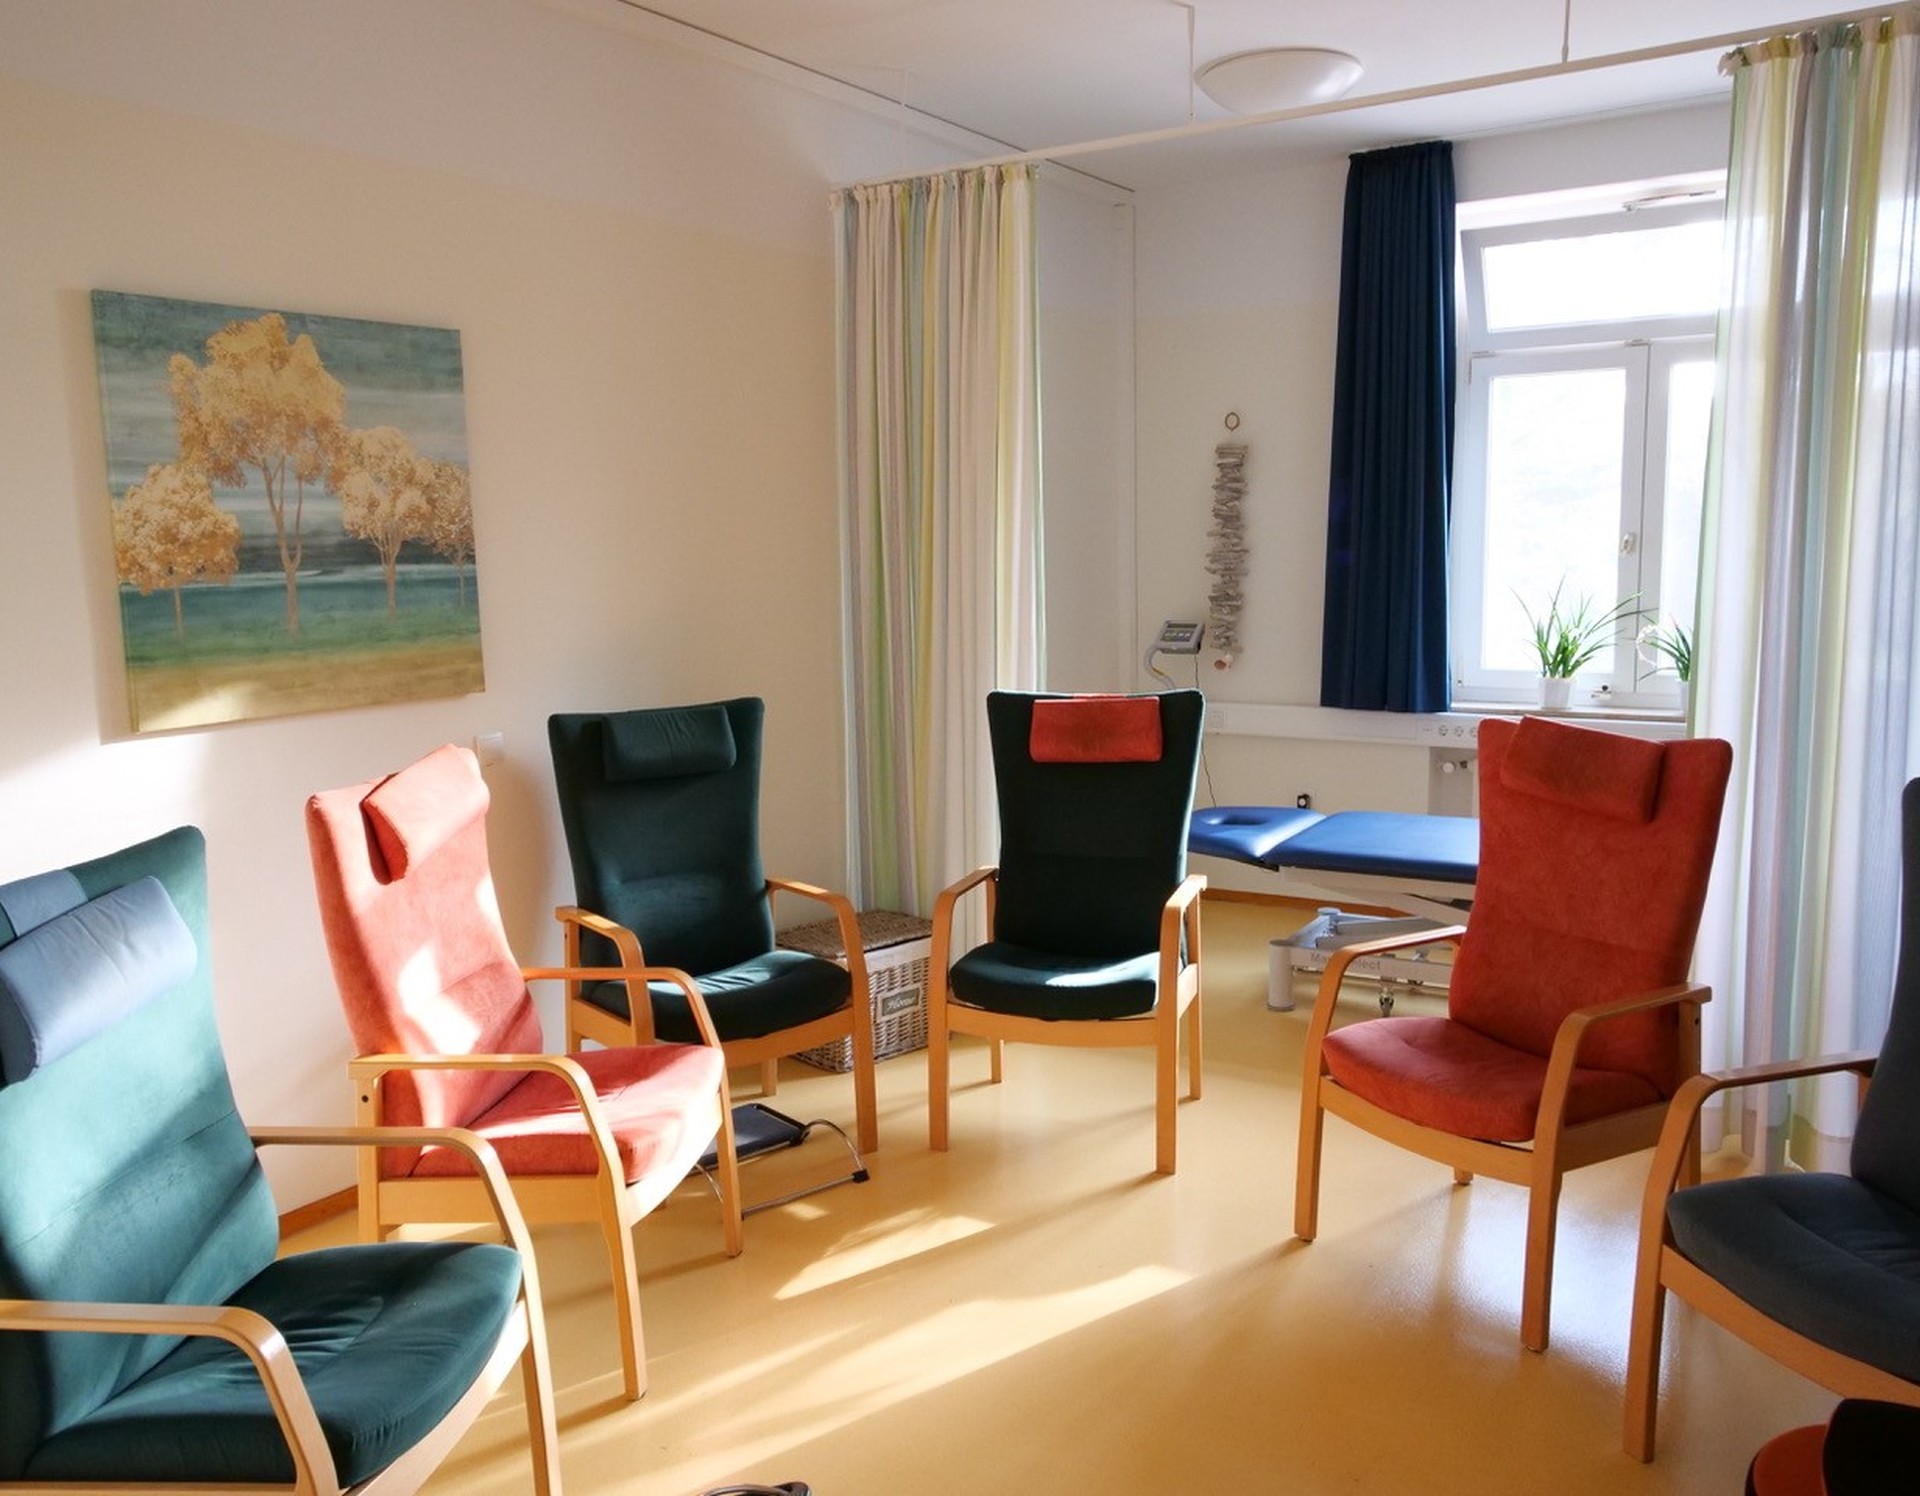 SIeben hohe Stühle in verschiedenen Farben stehen in einem sonnenbeschienenen Raum im Kreis. Foto: Dr. Bernward SIegmund